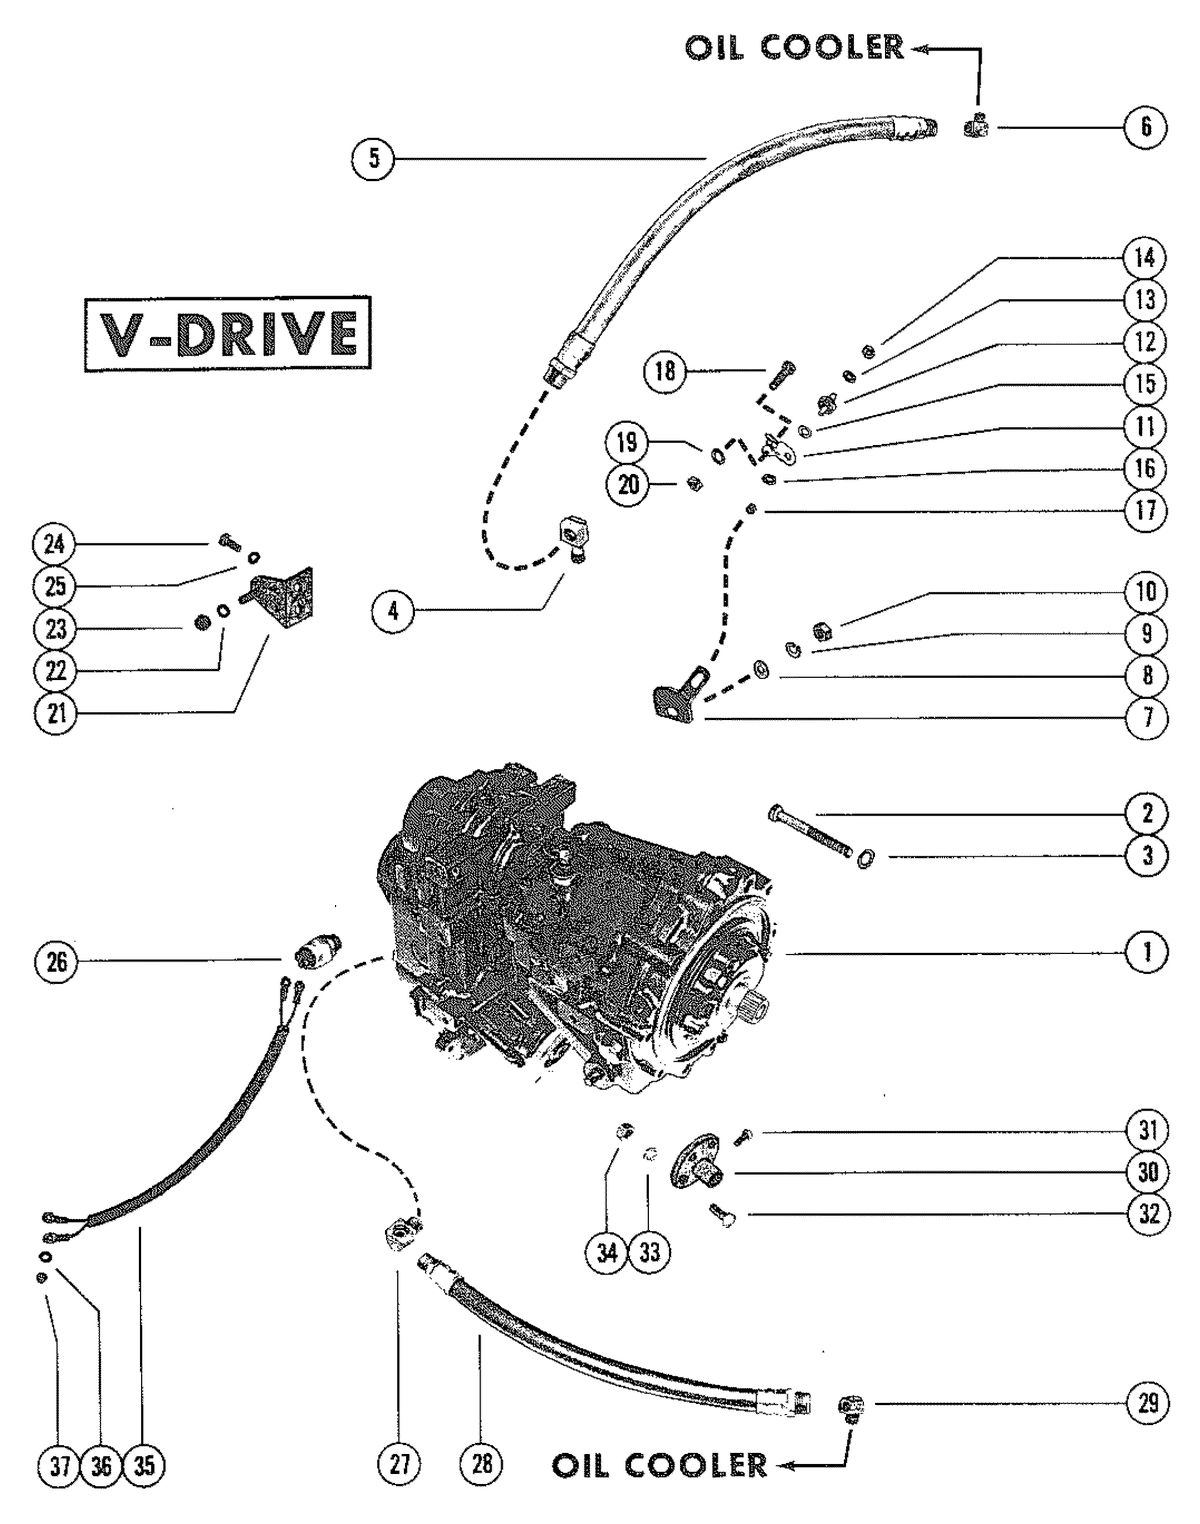 MERCRUISER 330 ENGINE (G.M.) TRANSMISSION ASSEMBLY (V-DRIVE)